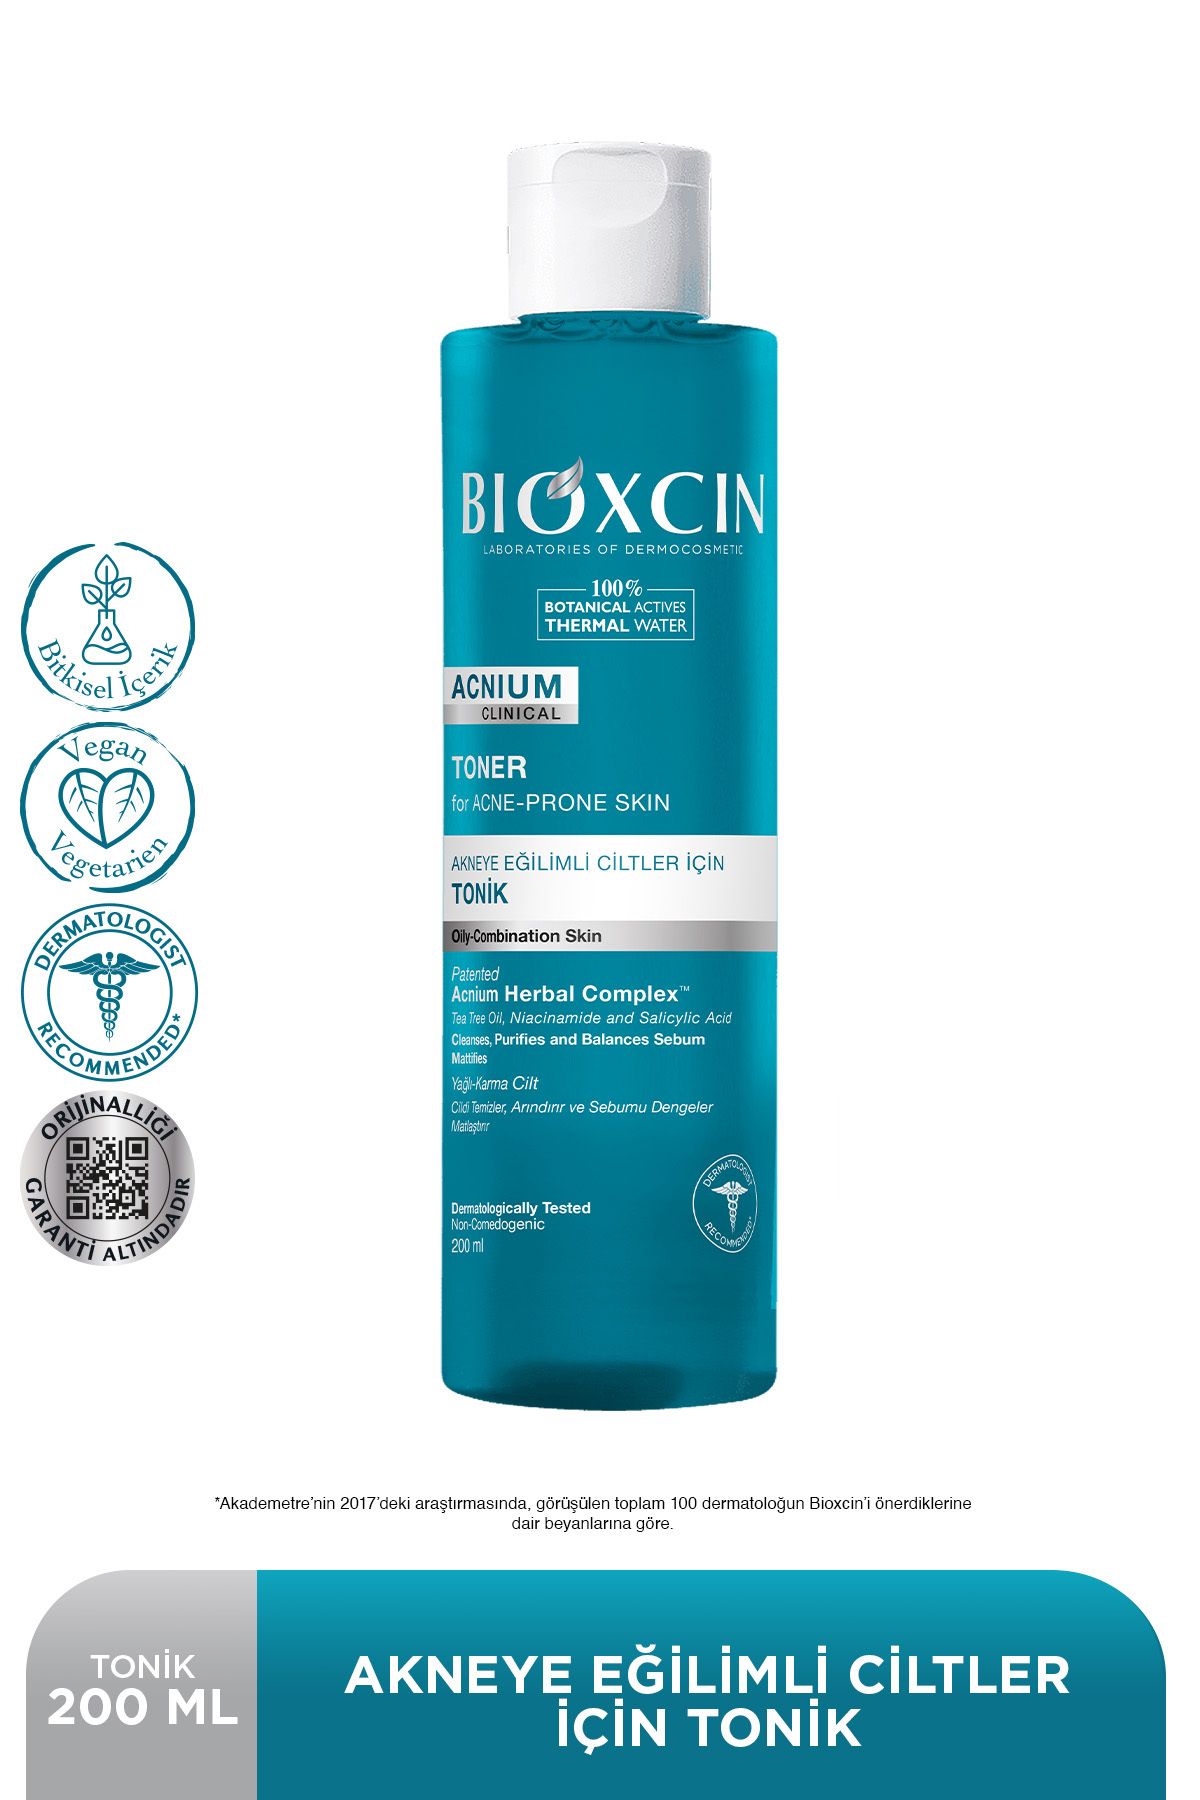 Bioxcin Acnium Tonik 200 Ml Clinical Vegan Akneye Eğilimli Ciltler İçin